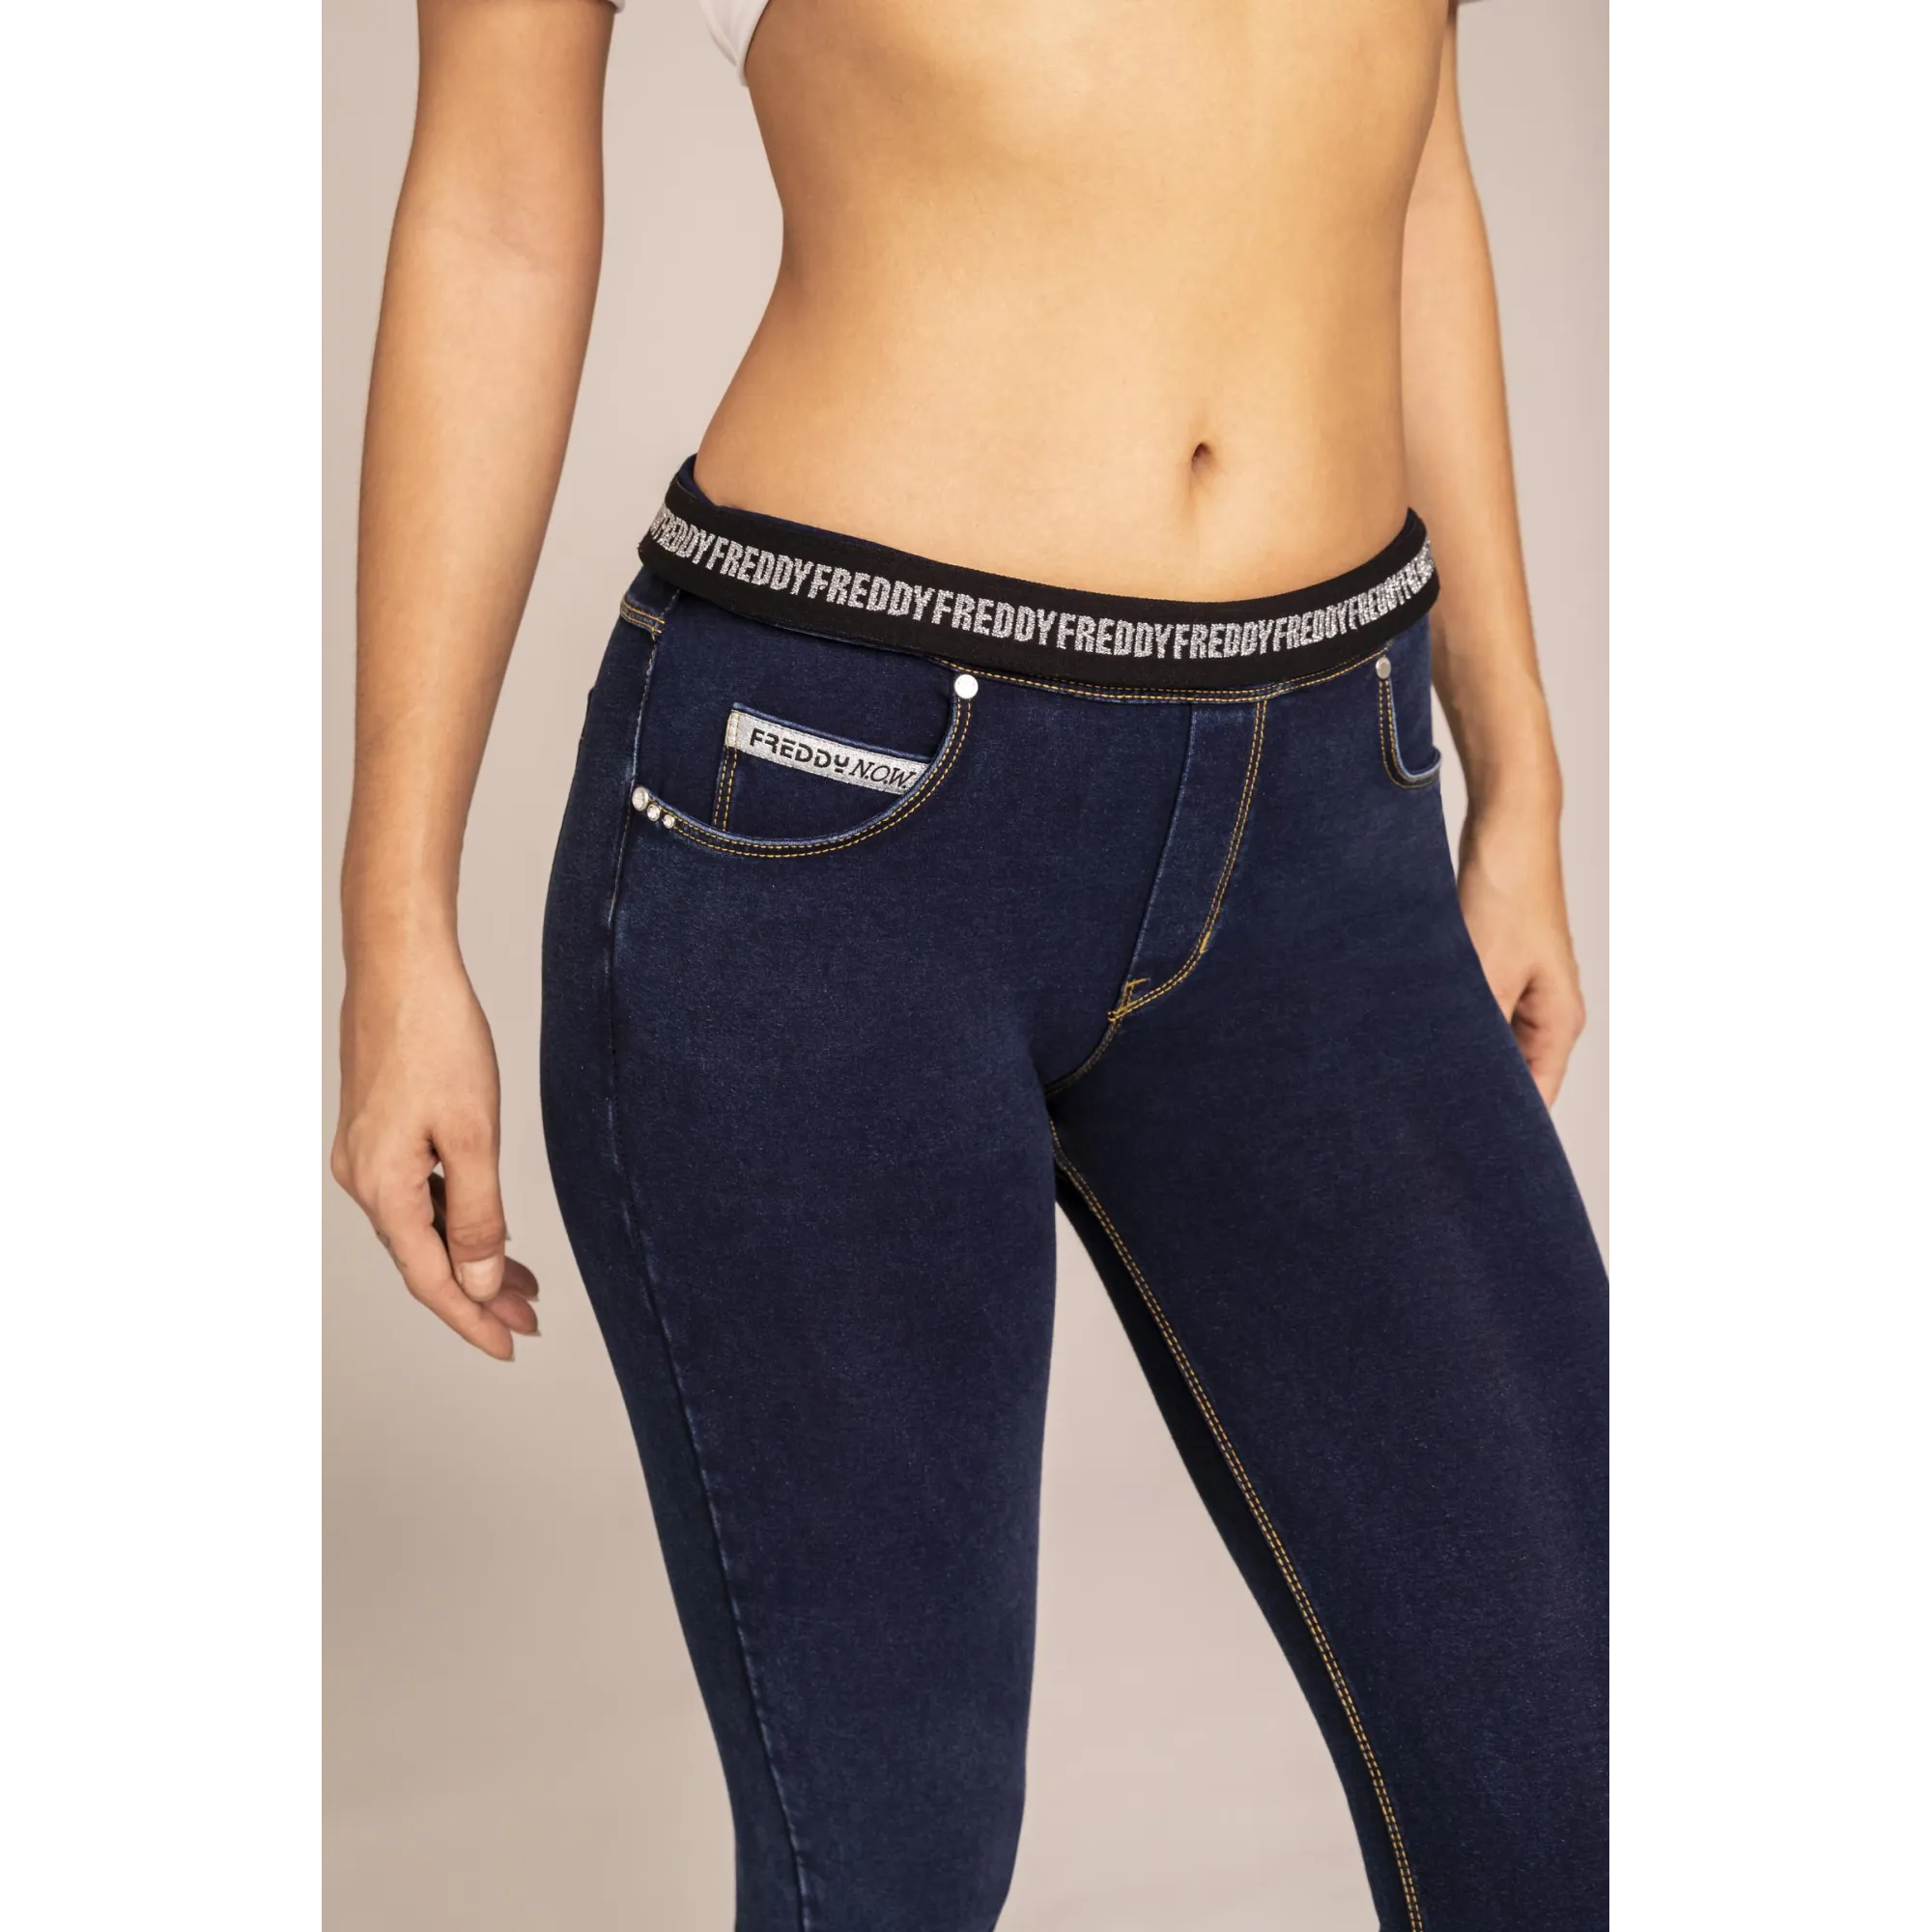 N.O.W.® Yoga - Spodnie Skinny z podwijanym pasem w kolorze niebieskim